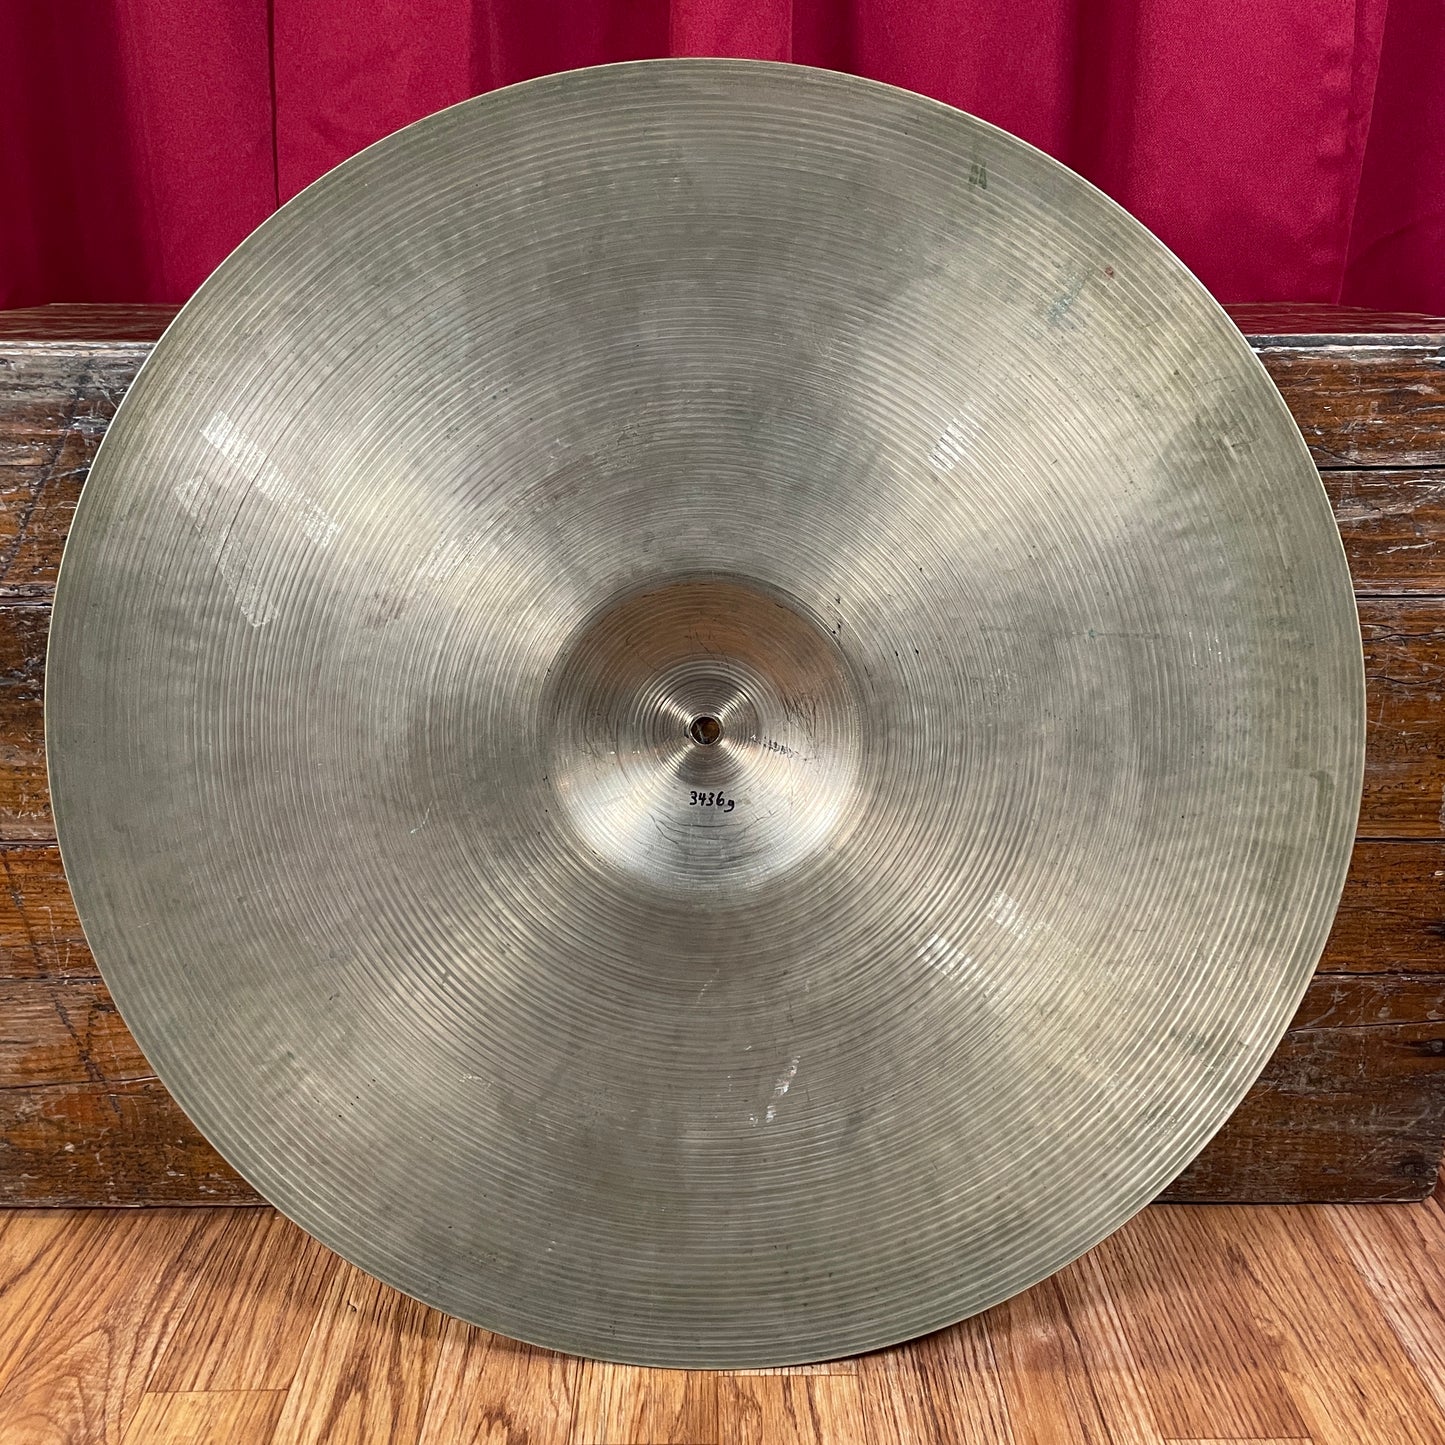 22" Zildjian A 1960s Ride Cymbal 3436g *Video Demo*